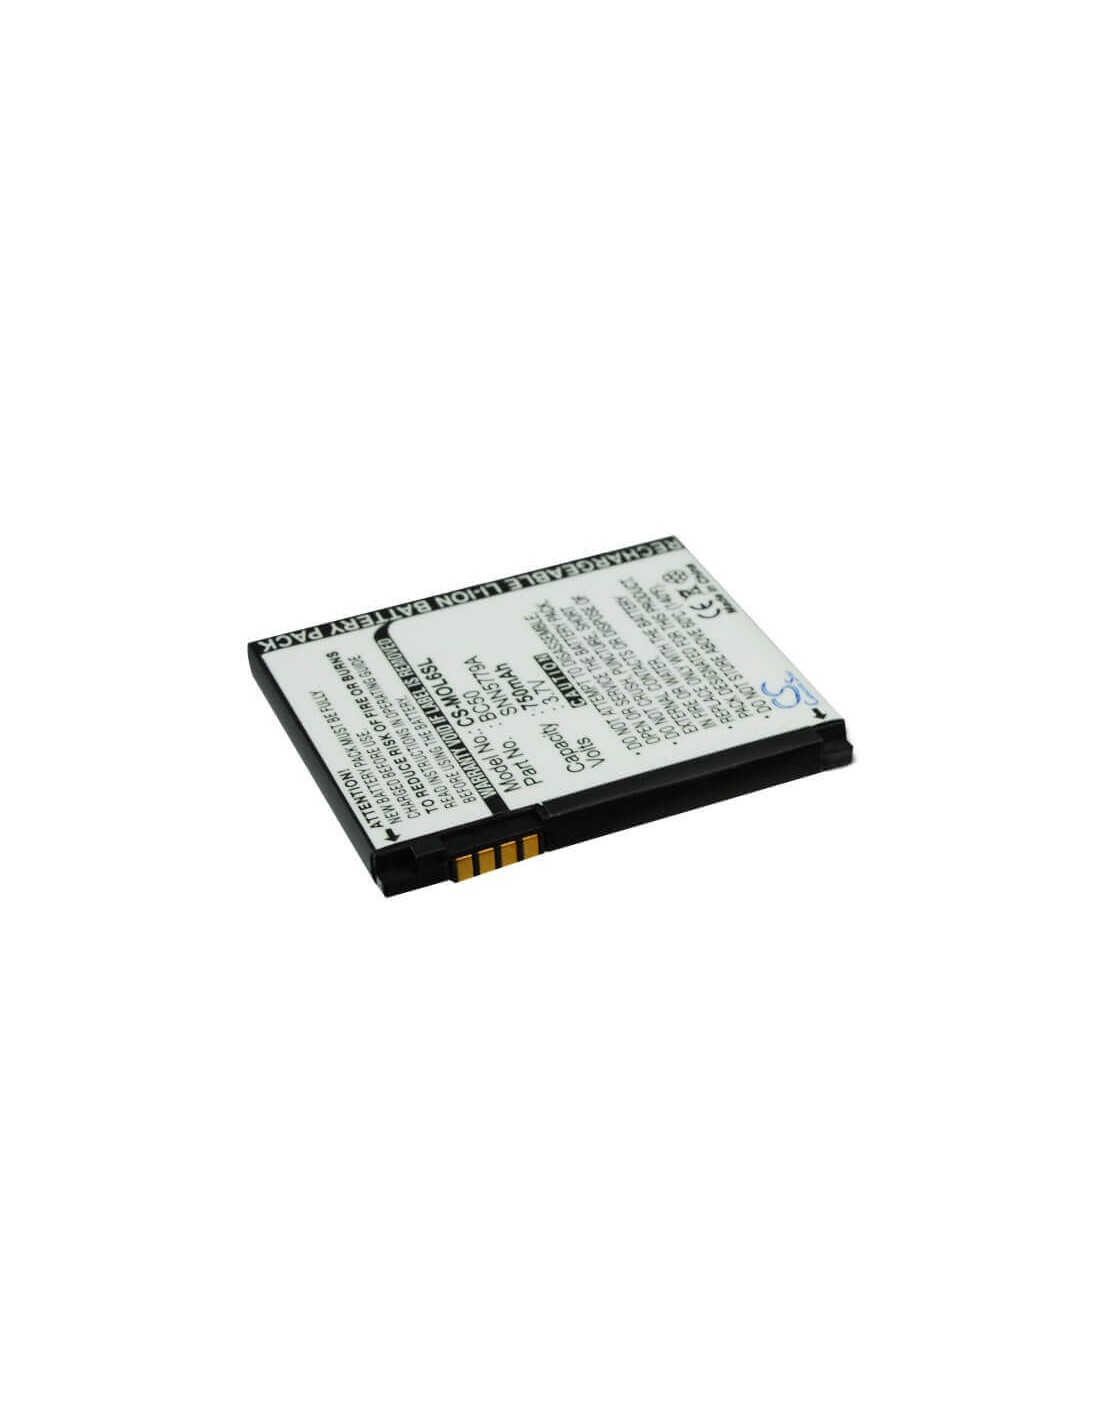 Battery for Motorola C261, SLVR L7, SLVR L7i 3.7V, 750mAh - 2.78Wh